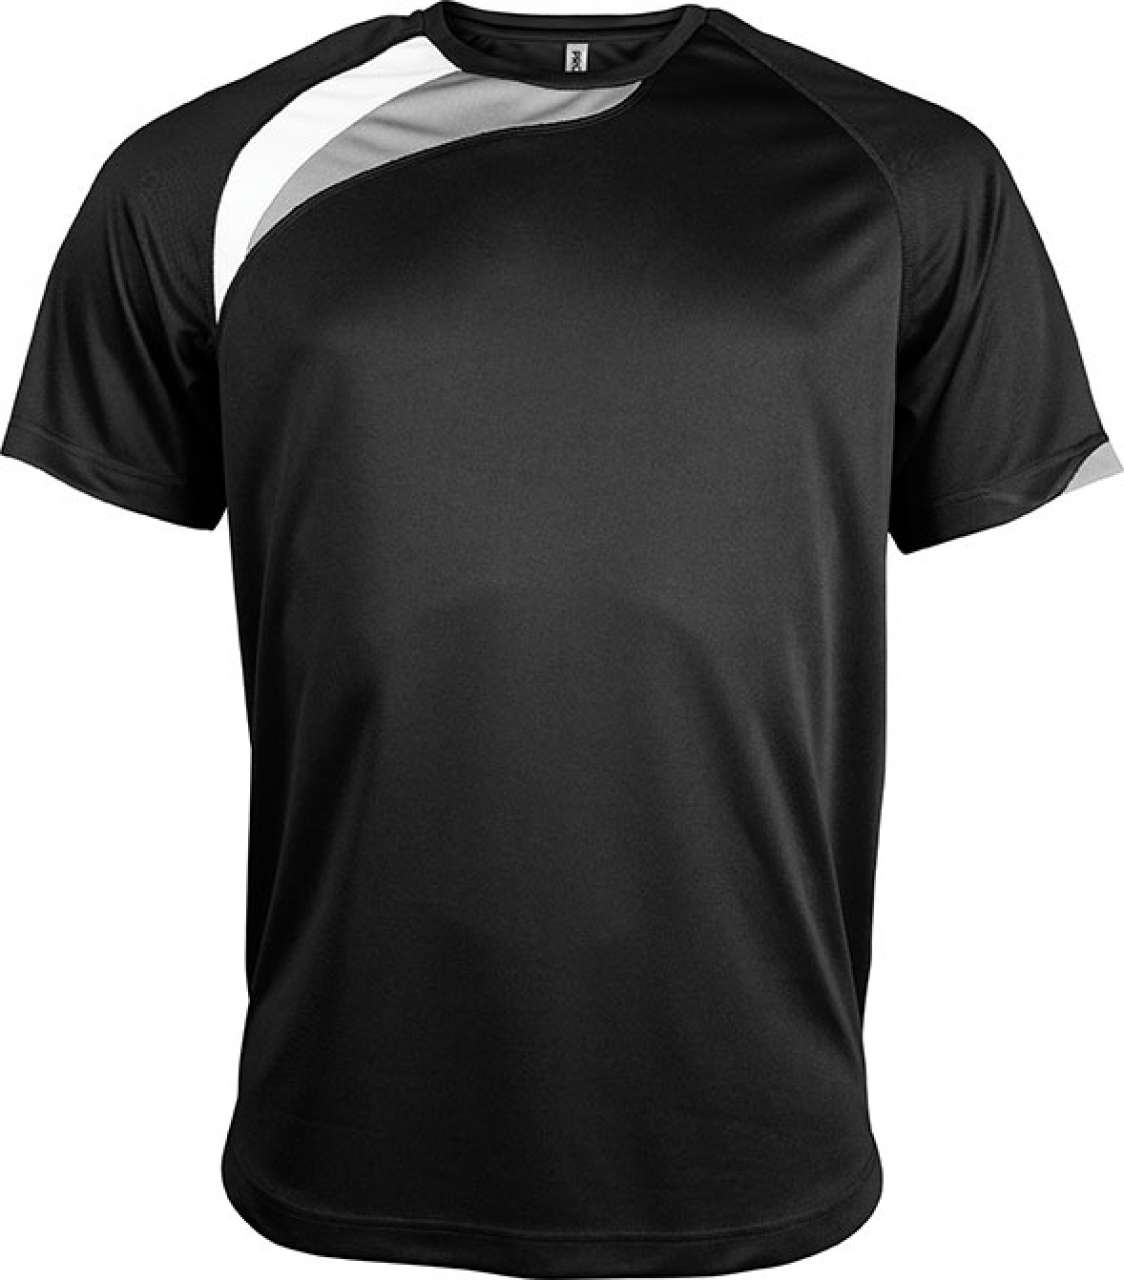 Proact Herren Sport T-Shirt Jersey Short Sleeve Fitness Training Kurzarm